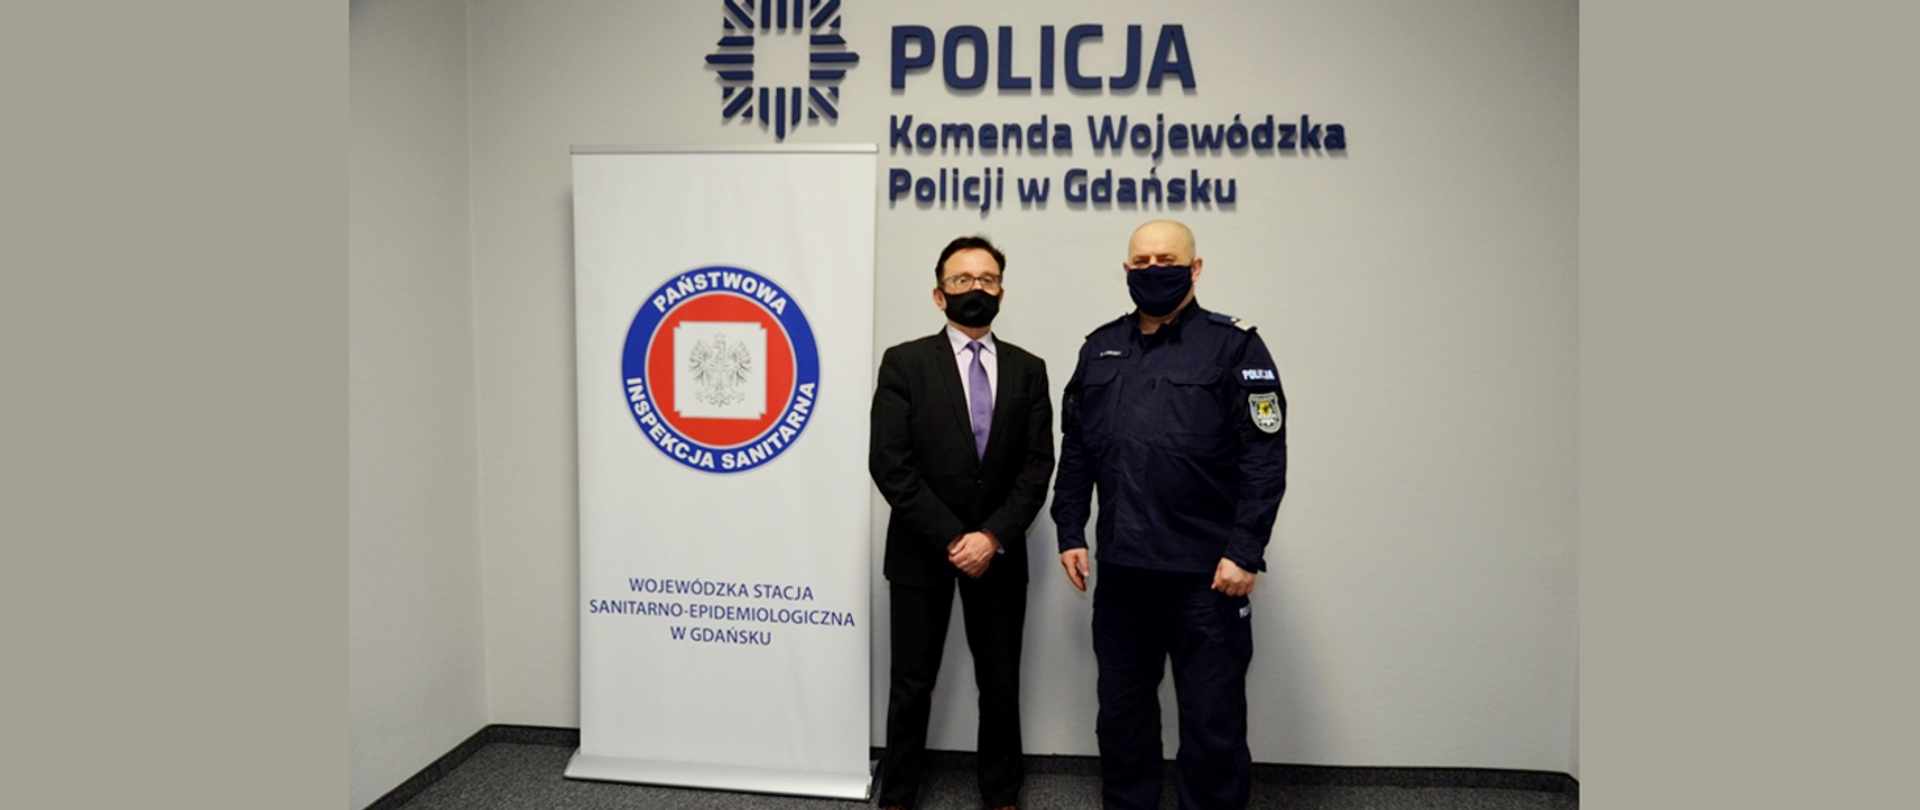 Spotkanie Pomorskiego Państwowego Wojewódzkiego Inspektora Sanitarnego z Wojewódzkim Komendantem Policji w Gdańsku